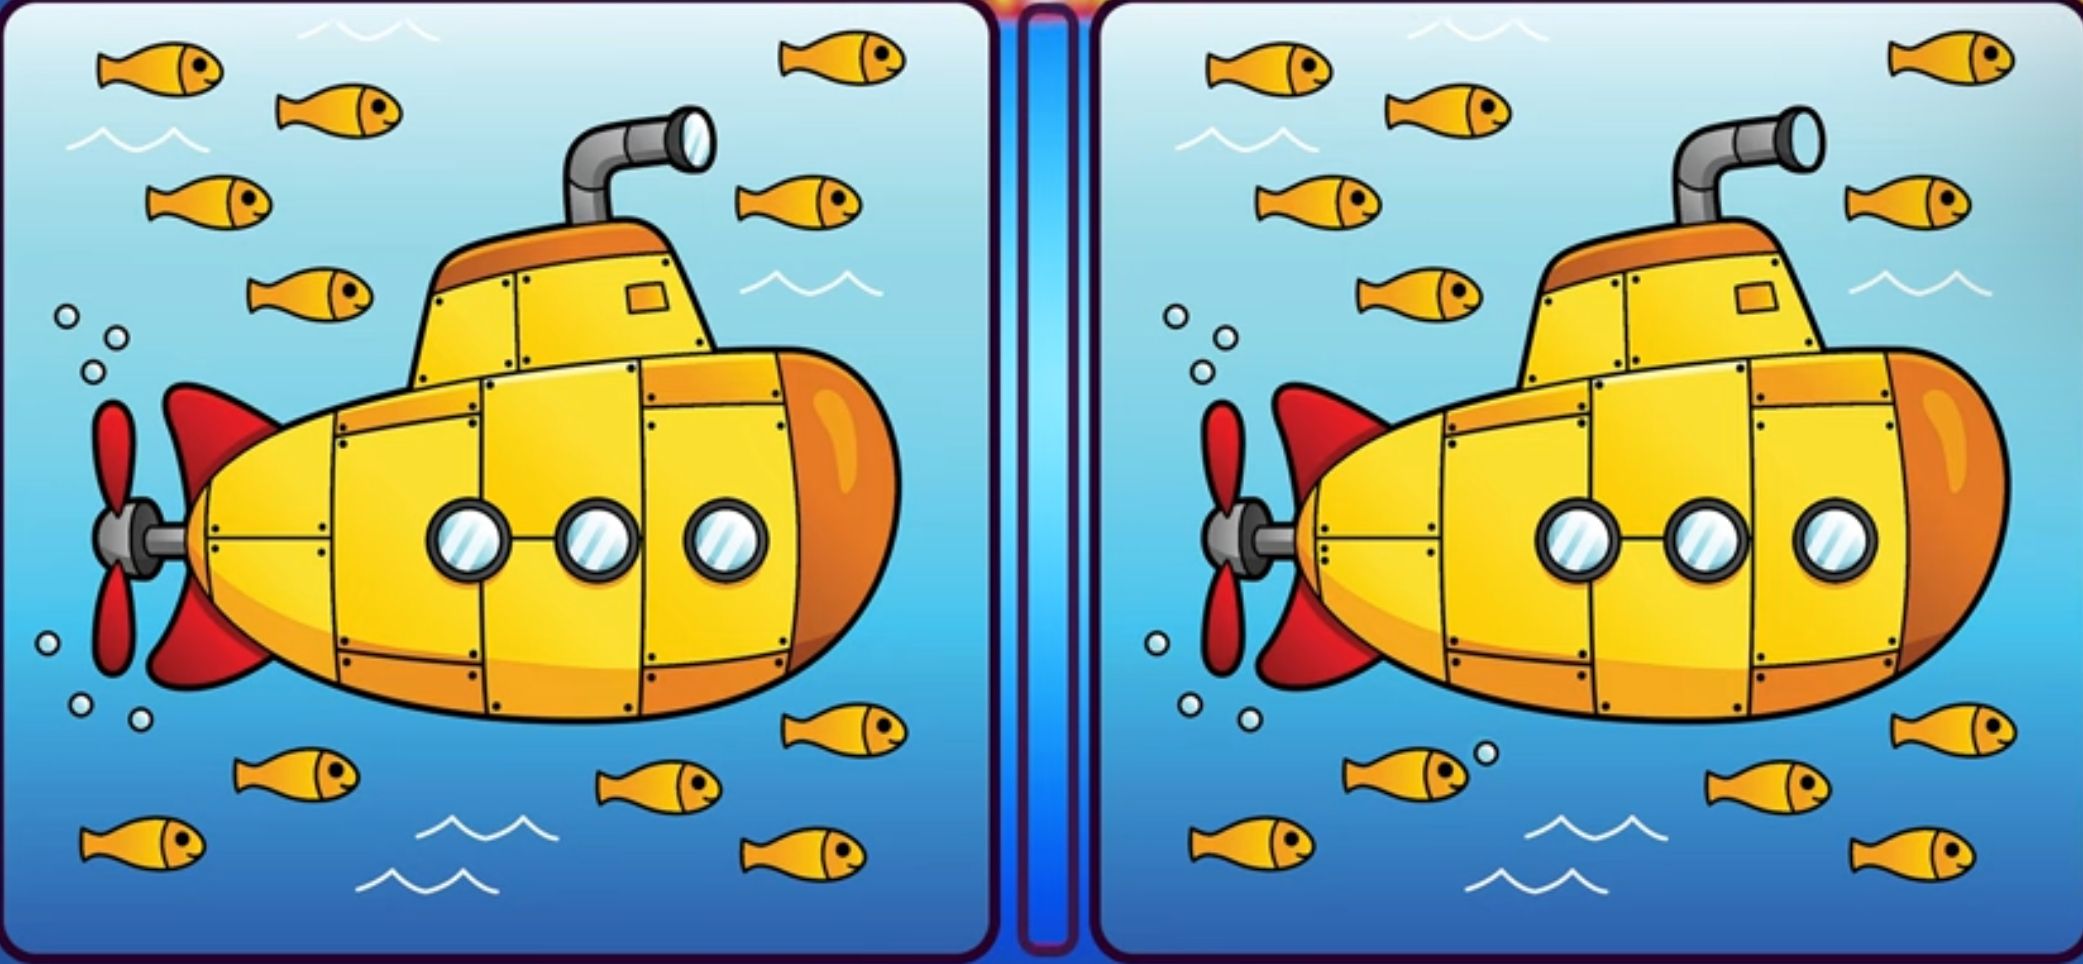 Simak baik-baik soal gambar tes IQ kali ini, di mana Kamu harus menemukan perbedaan gambar kapal selam. 